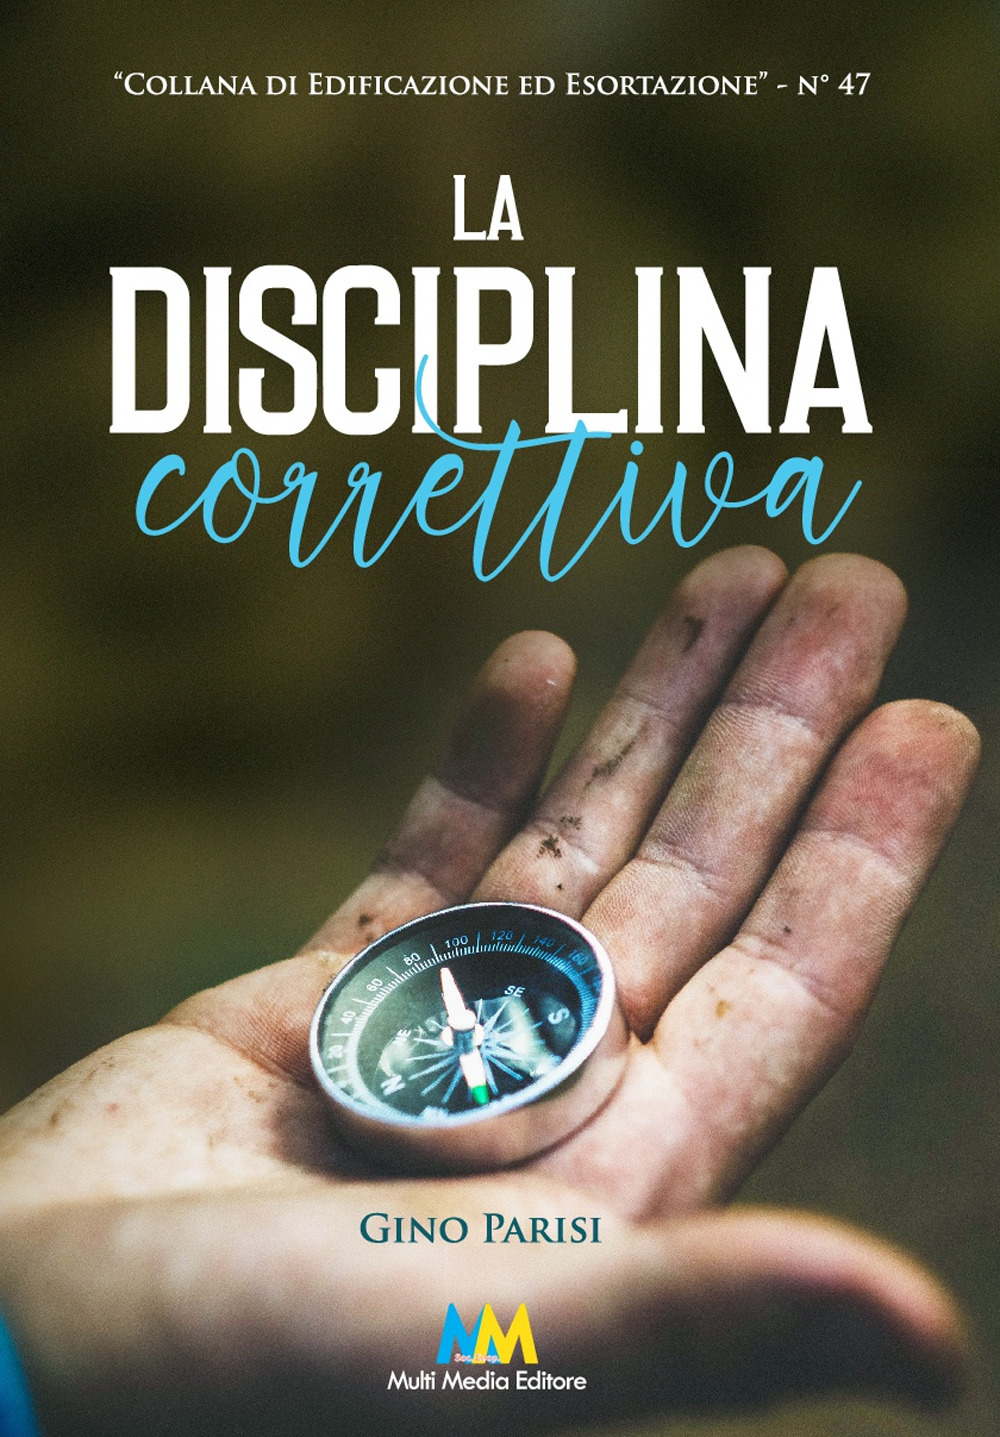 La disciplina correttiva